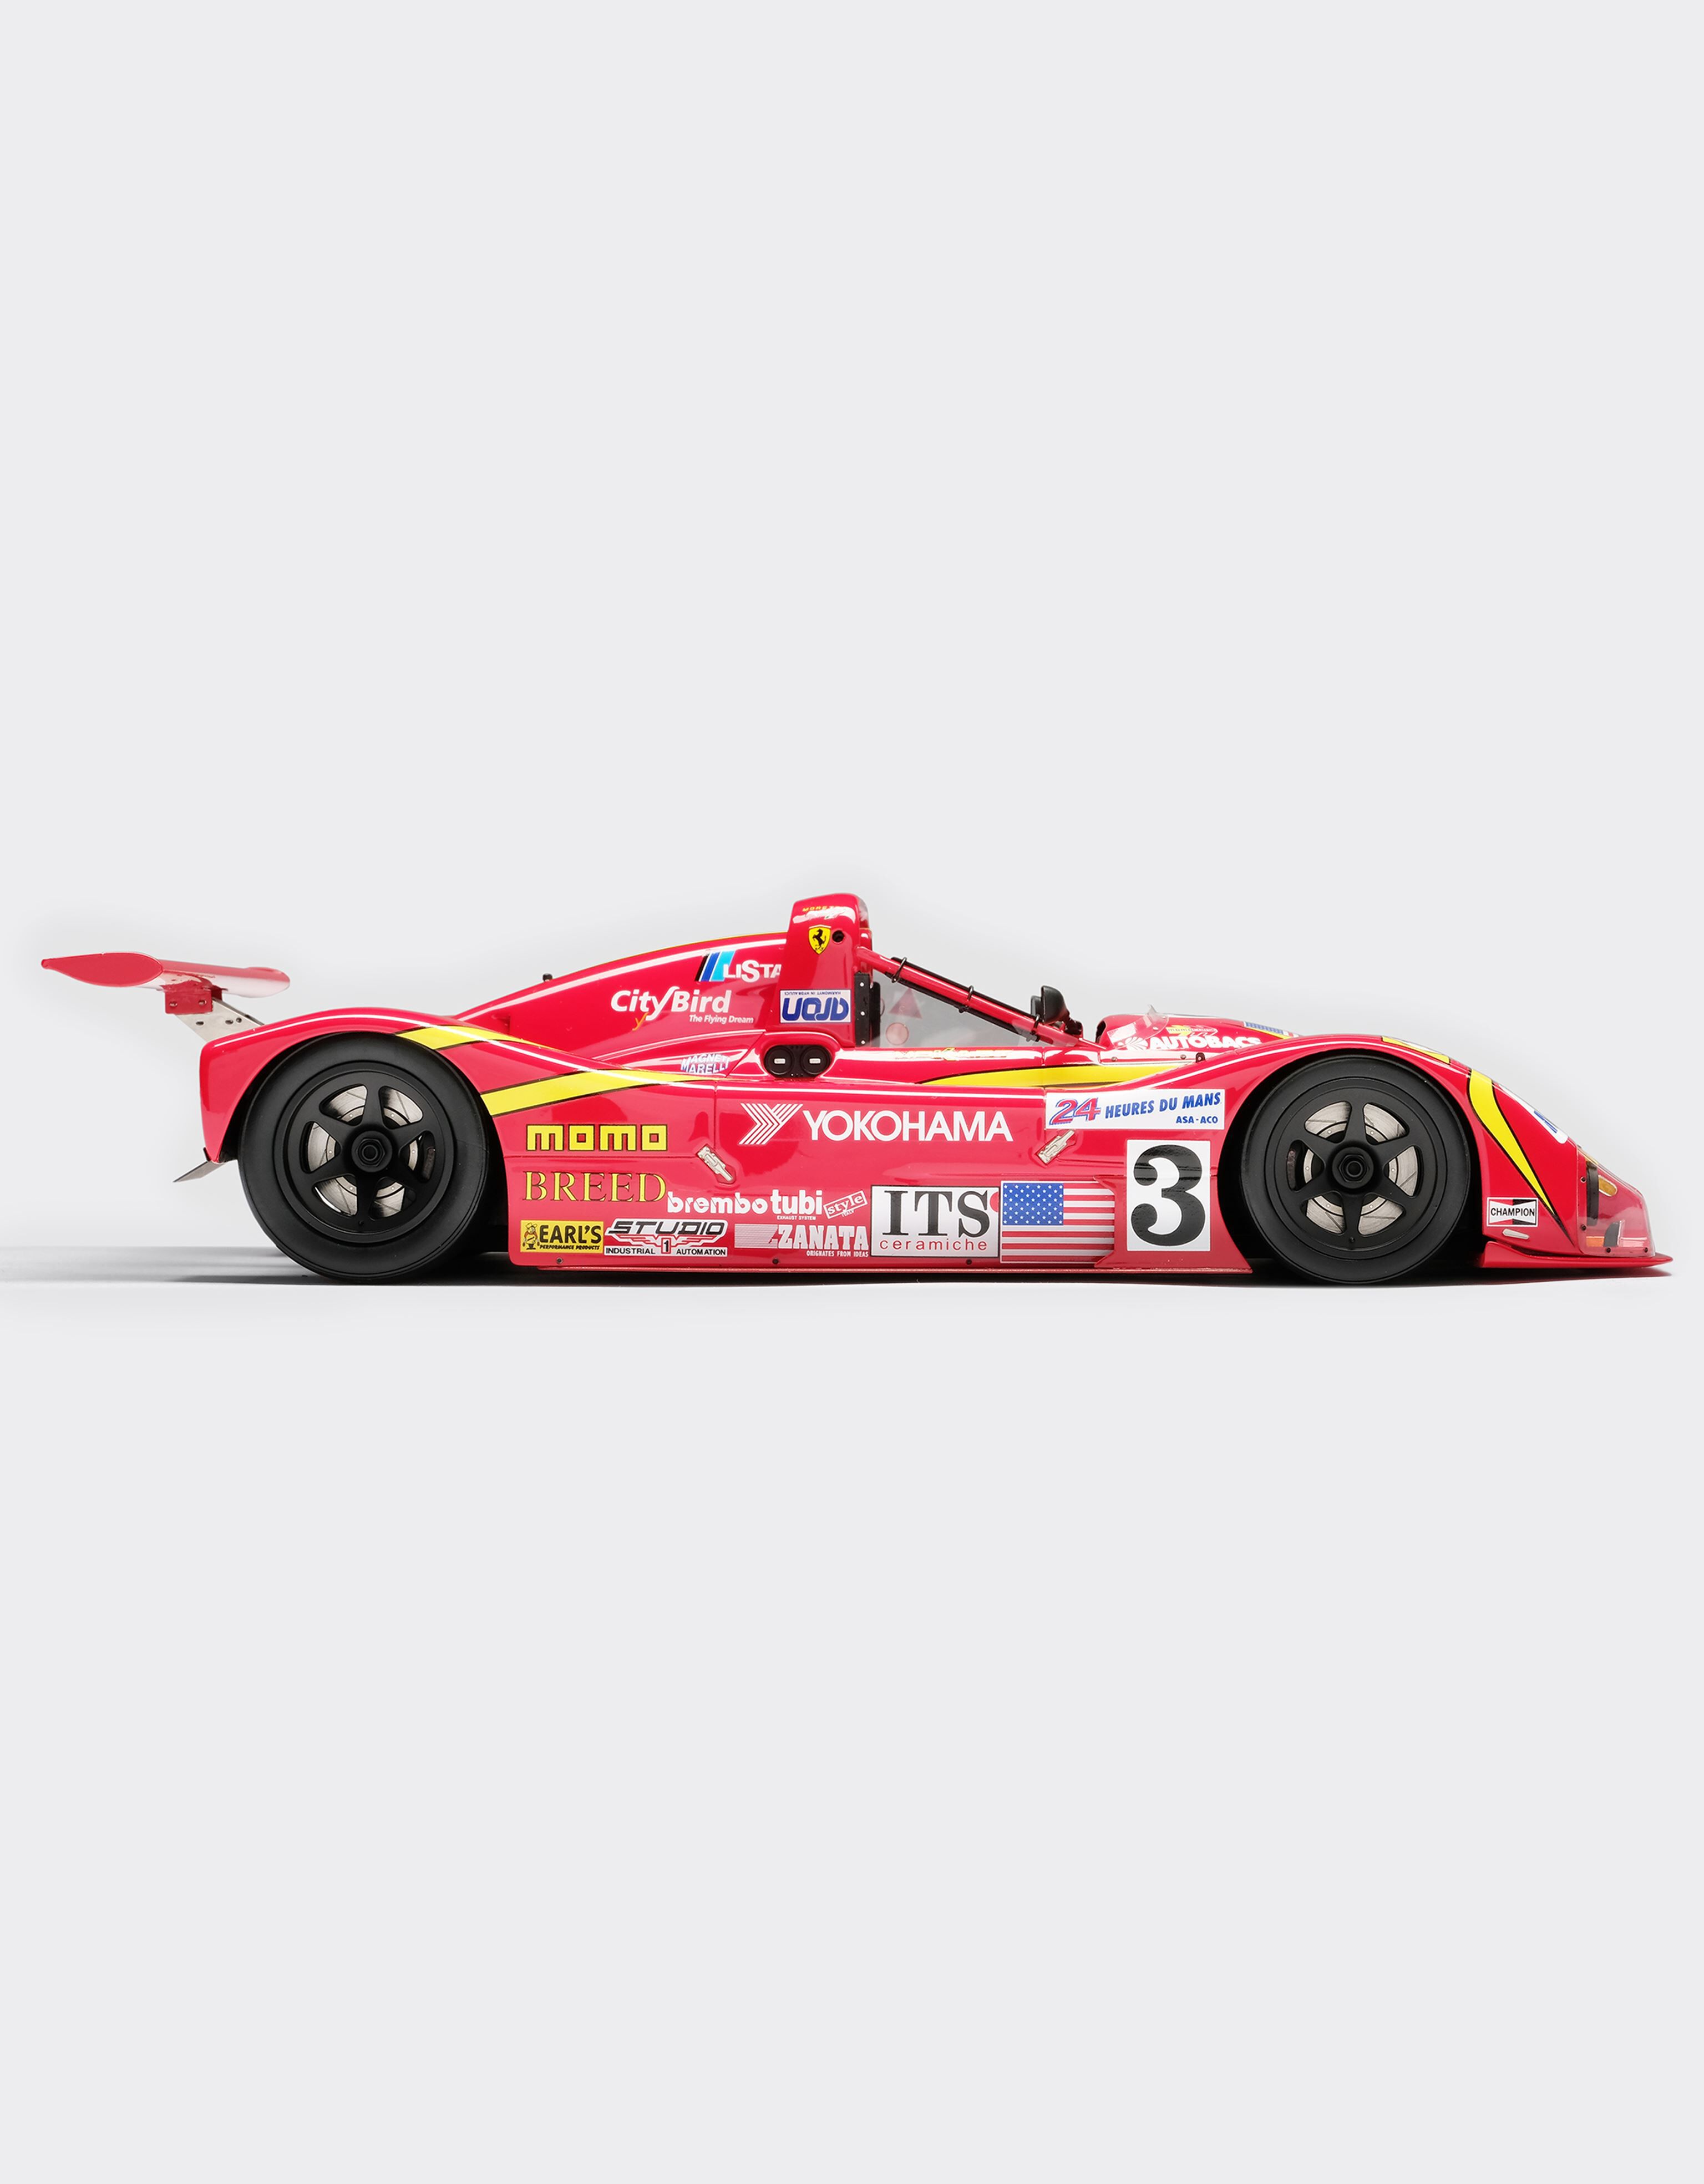 Ferrari Ferrari 333SP Le Mans model in 1:18 scale 红色 L7589f